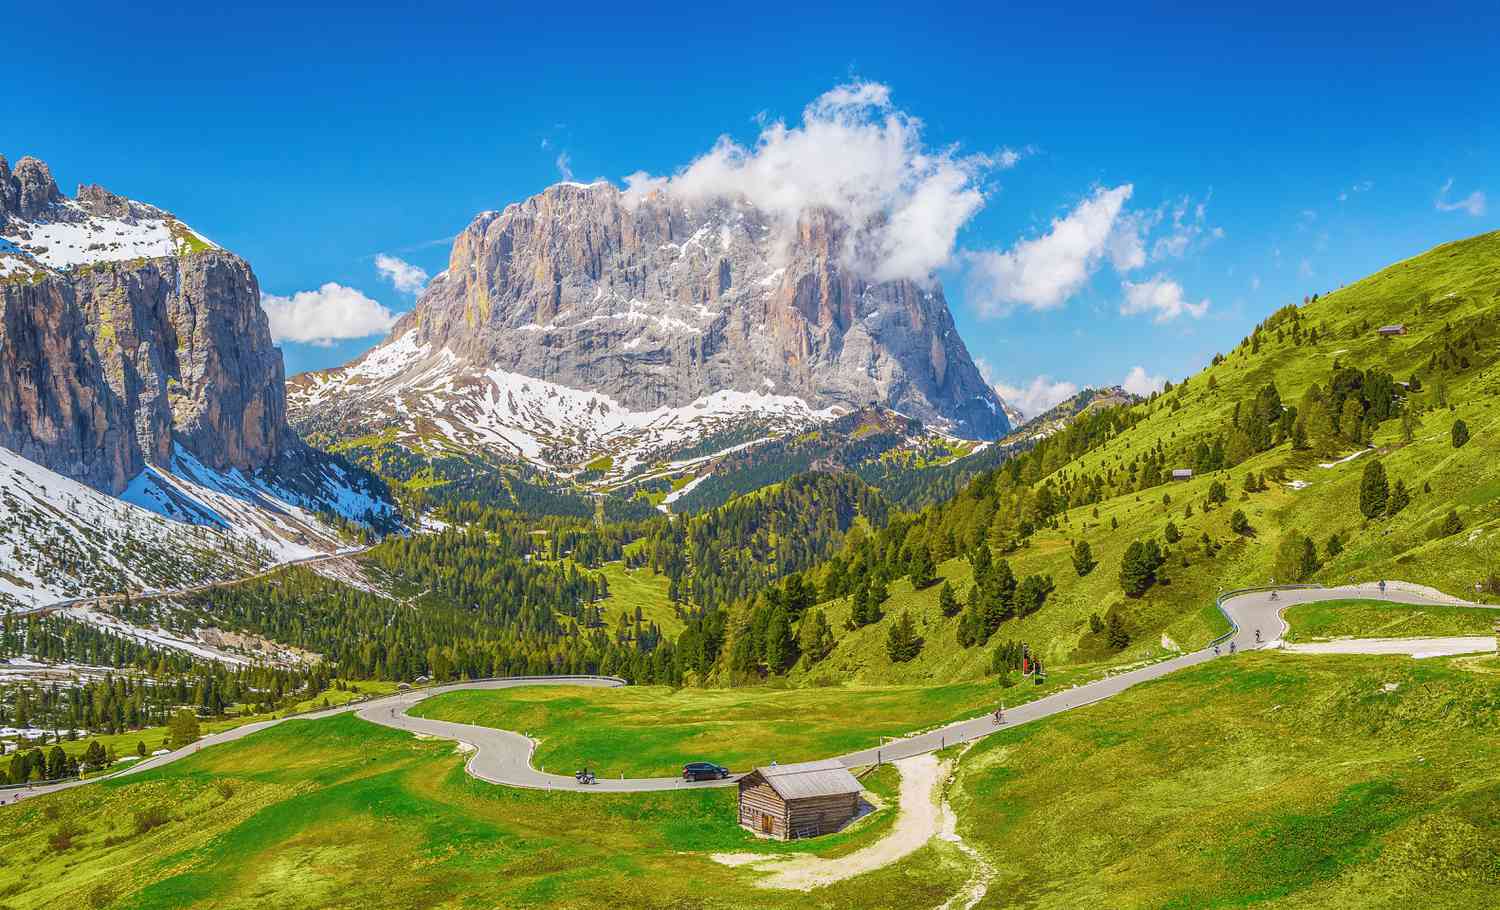 Khám phá Dolomites - 1 trong những kỳ quan thế giới được Unesco công nhận